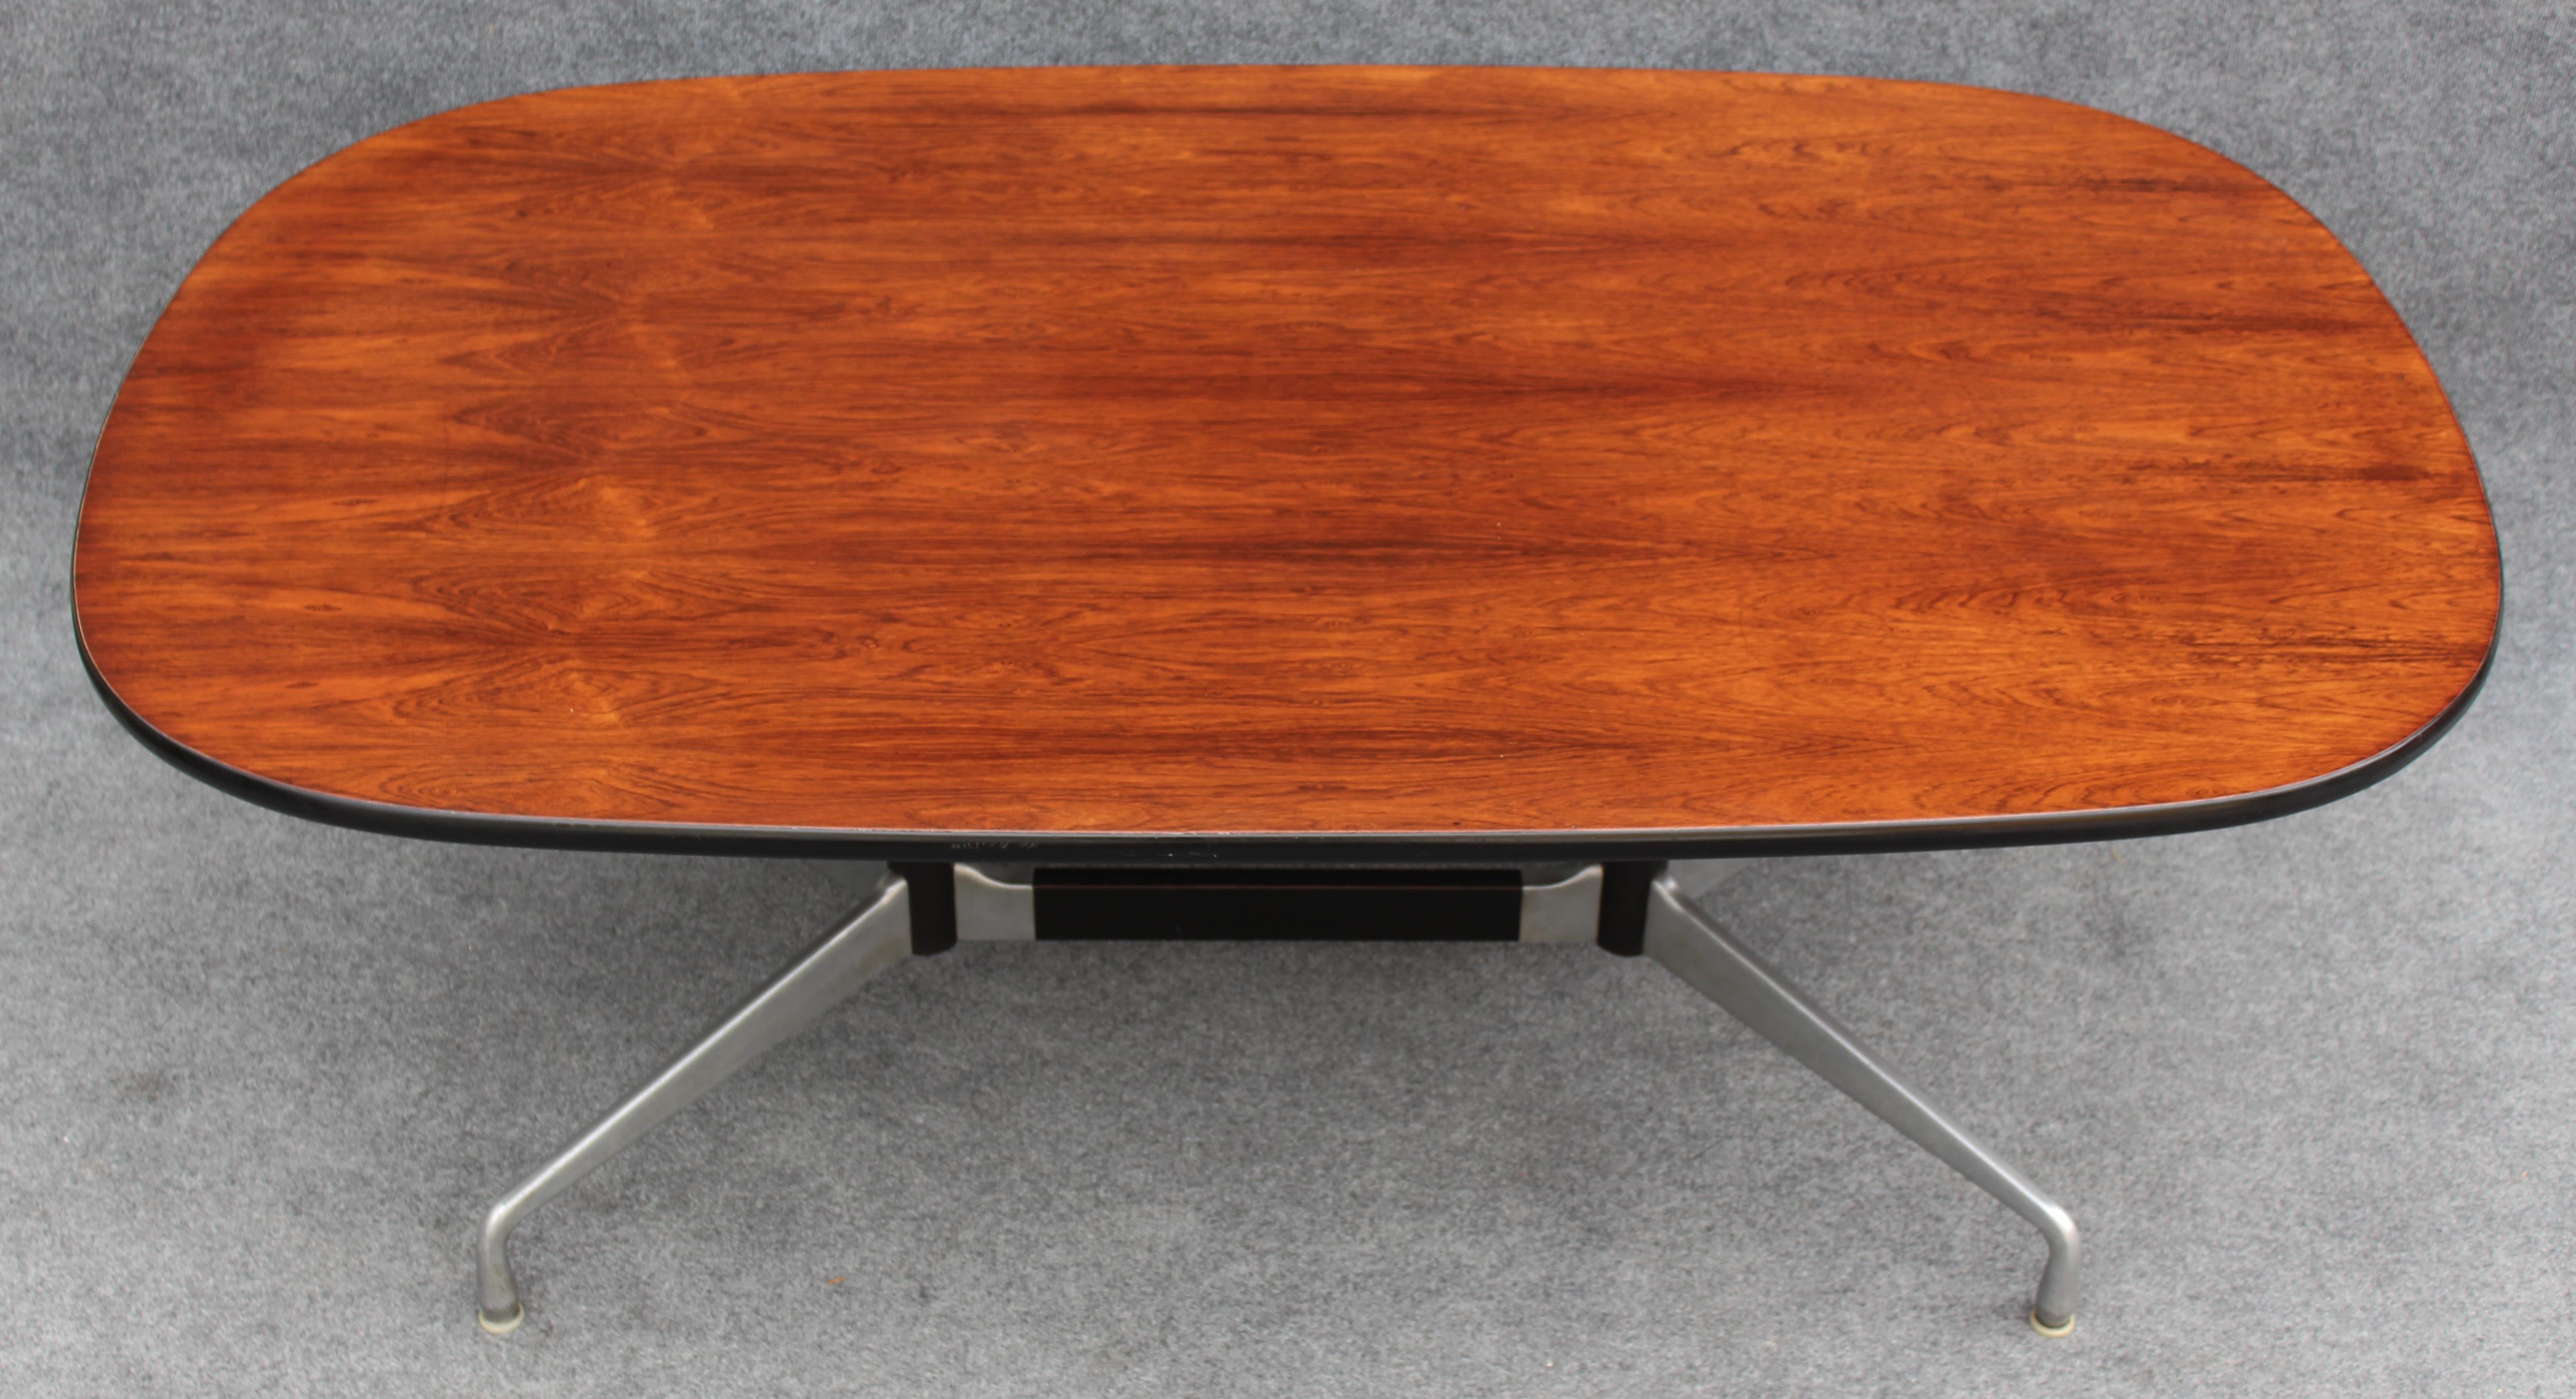 Cette table rare a été conçue par Charles et Ray Eames au début des années 1960 pour Herman Miller, le producteur de toutes les créations Eames à l'époque. Sa production n'était pas très répandue à l'époque, et il y en a eu très peu. En fait, cet